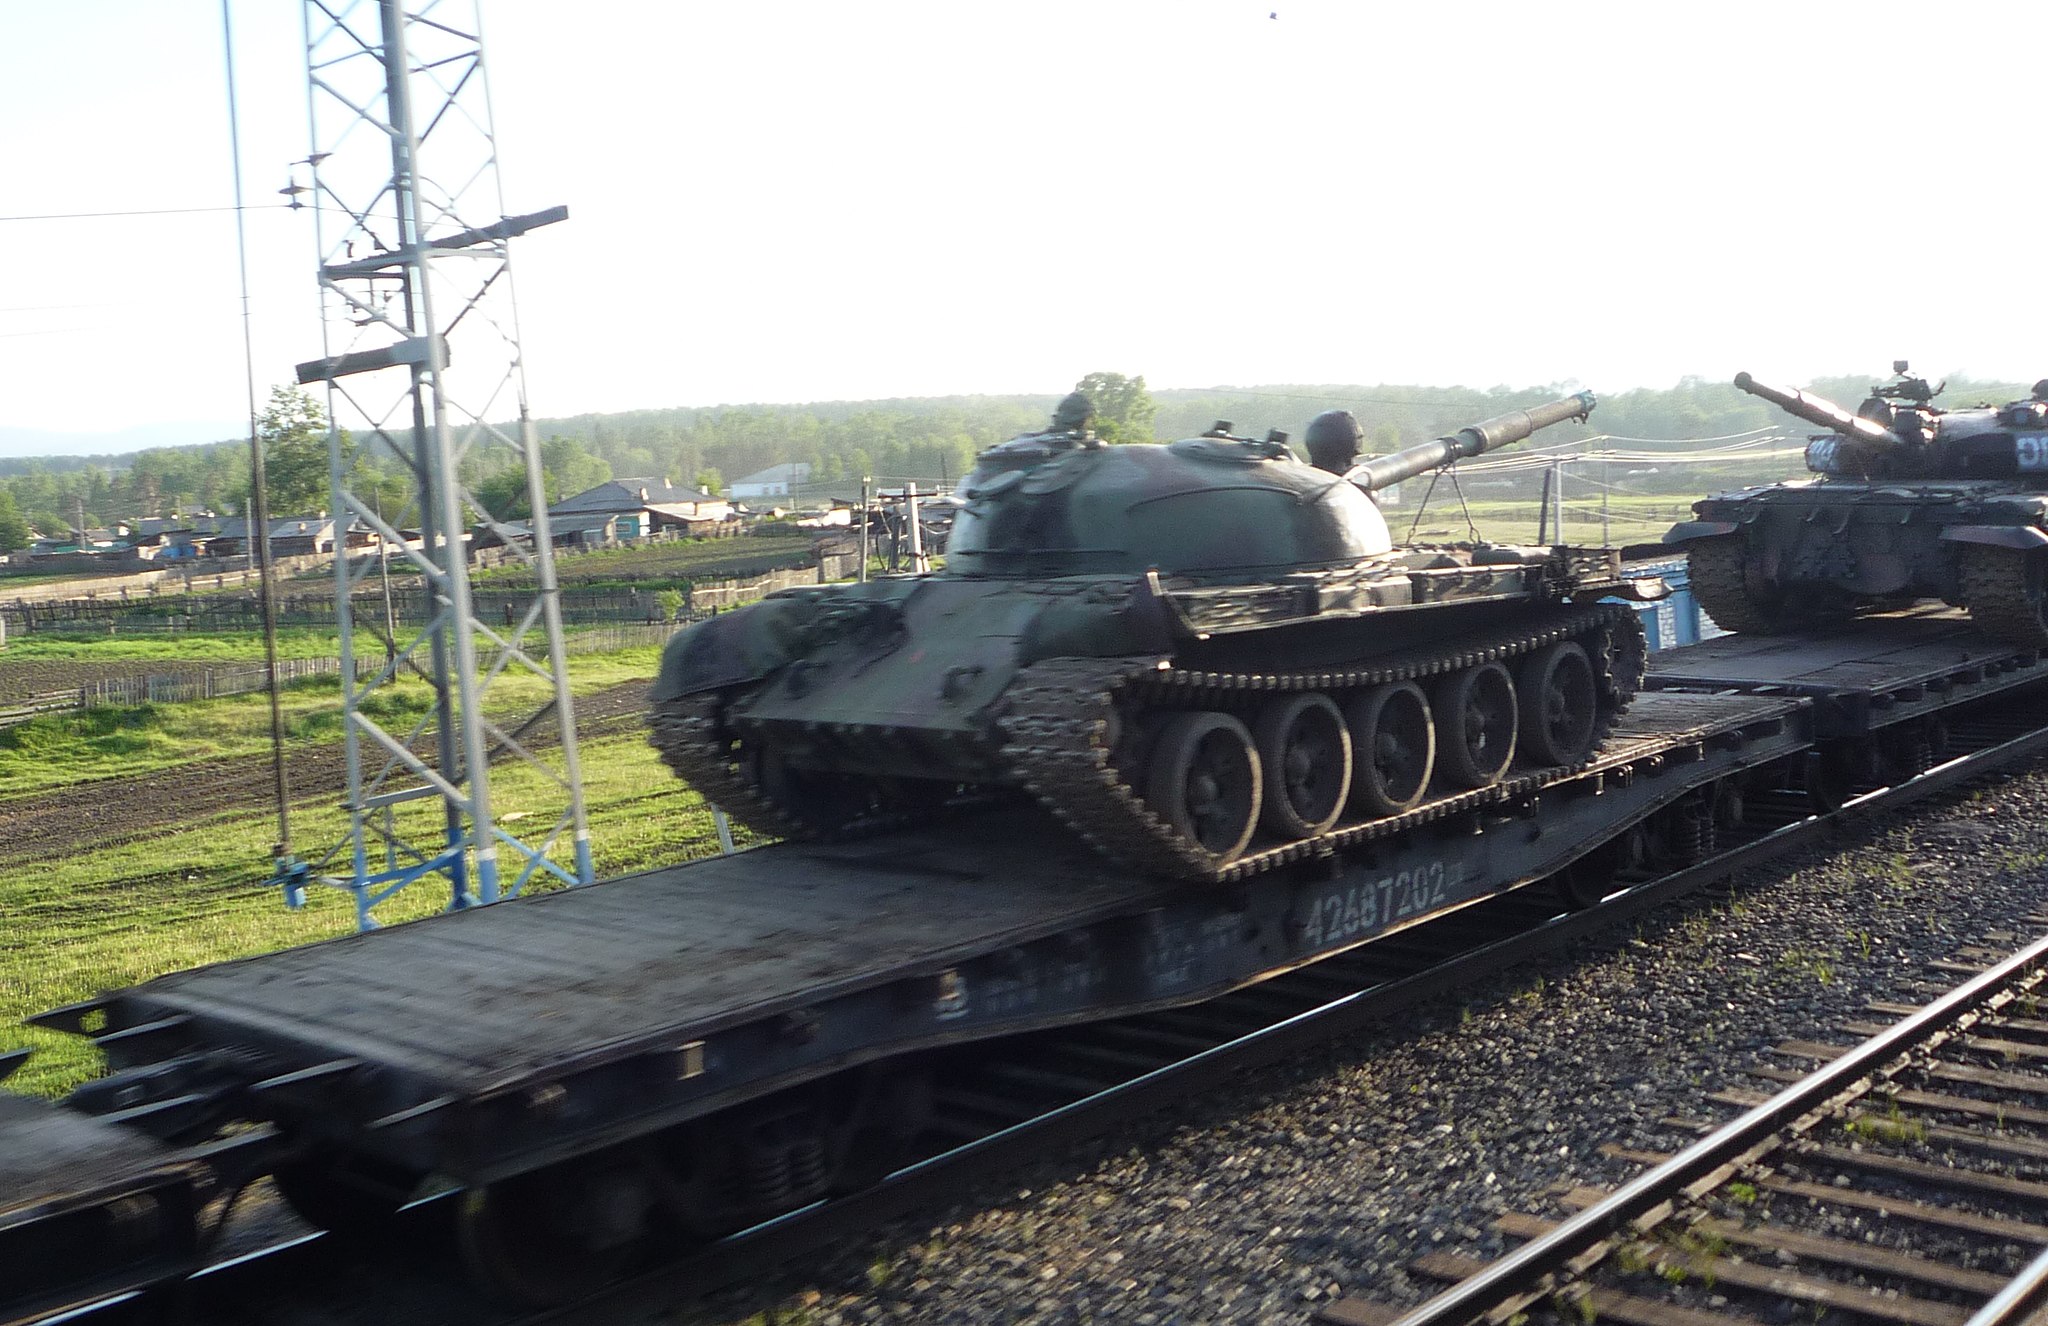 ABD neden top yekün bir savaşta Rusya'yı yenebileceğini düşünüyor? Tüm NATO ABD'yi desteklese bile, Rusya 20 bin tankla hala çok güçlü. - T 62 and T 62M tanks transported by train rusya